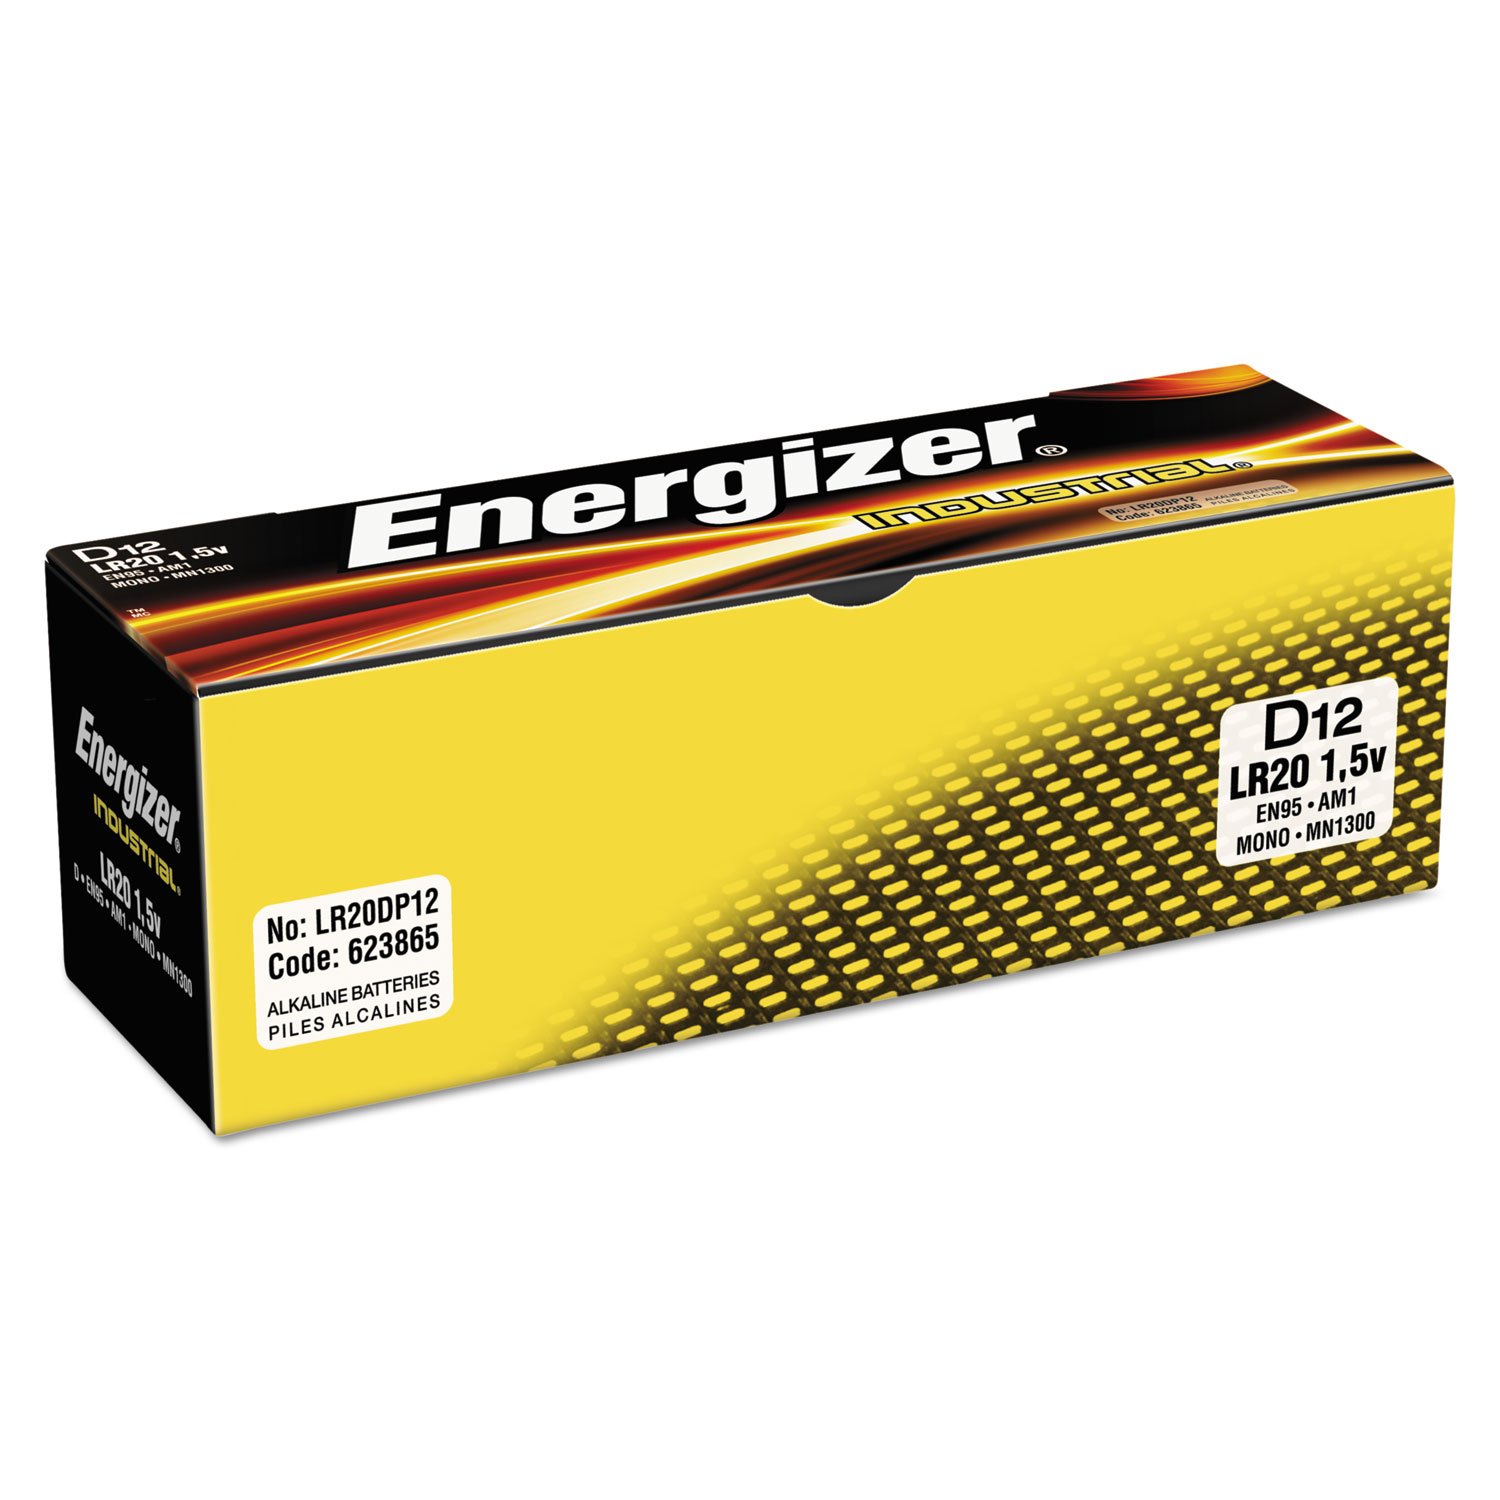 Energizer D Alkaline Industrial Batteries1.5v, Box of 12